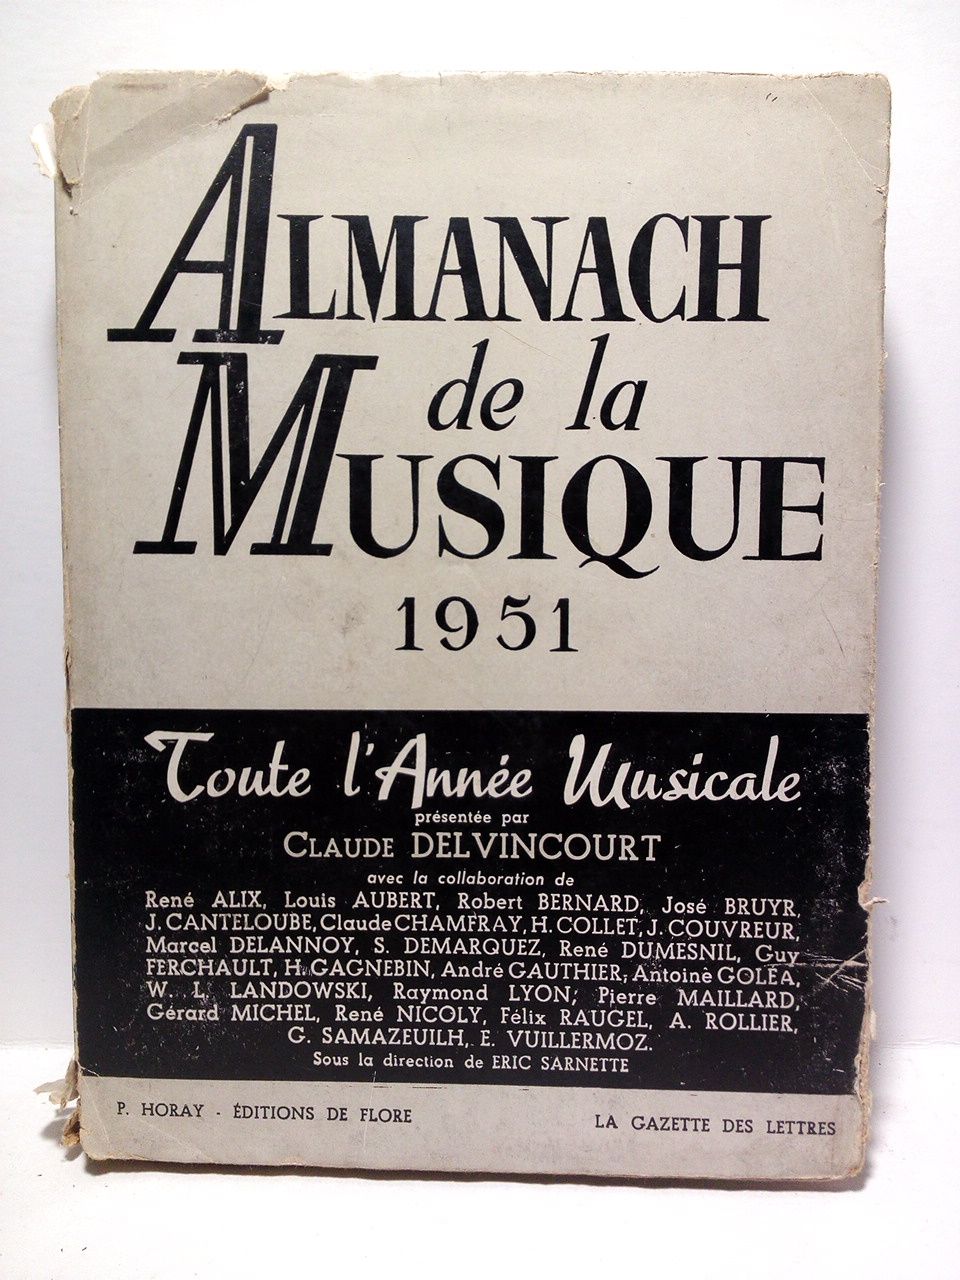 DELVINCOURT, Claude (prsen.) - Almanach de la Musique. 1951 /  Prsent par Claude Delvincourt, Directeur du Conservatoire de Paris; Sous la direction de Eric Sarnette